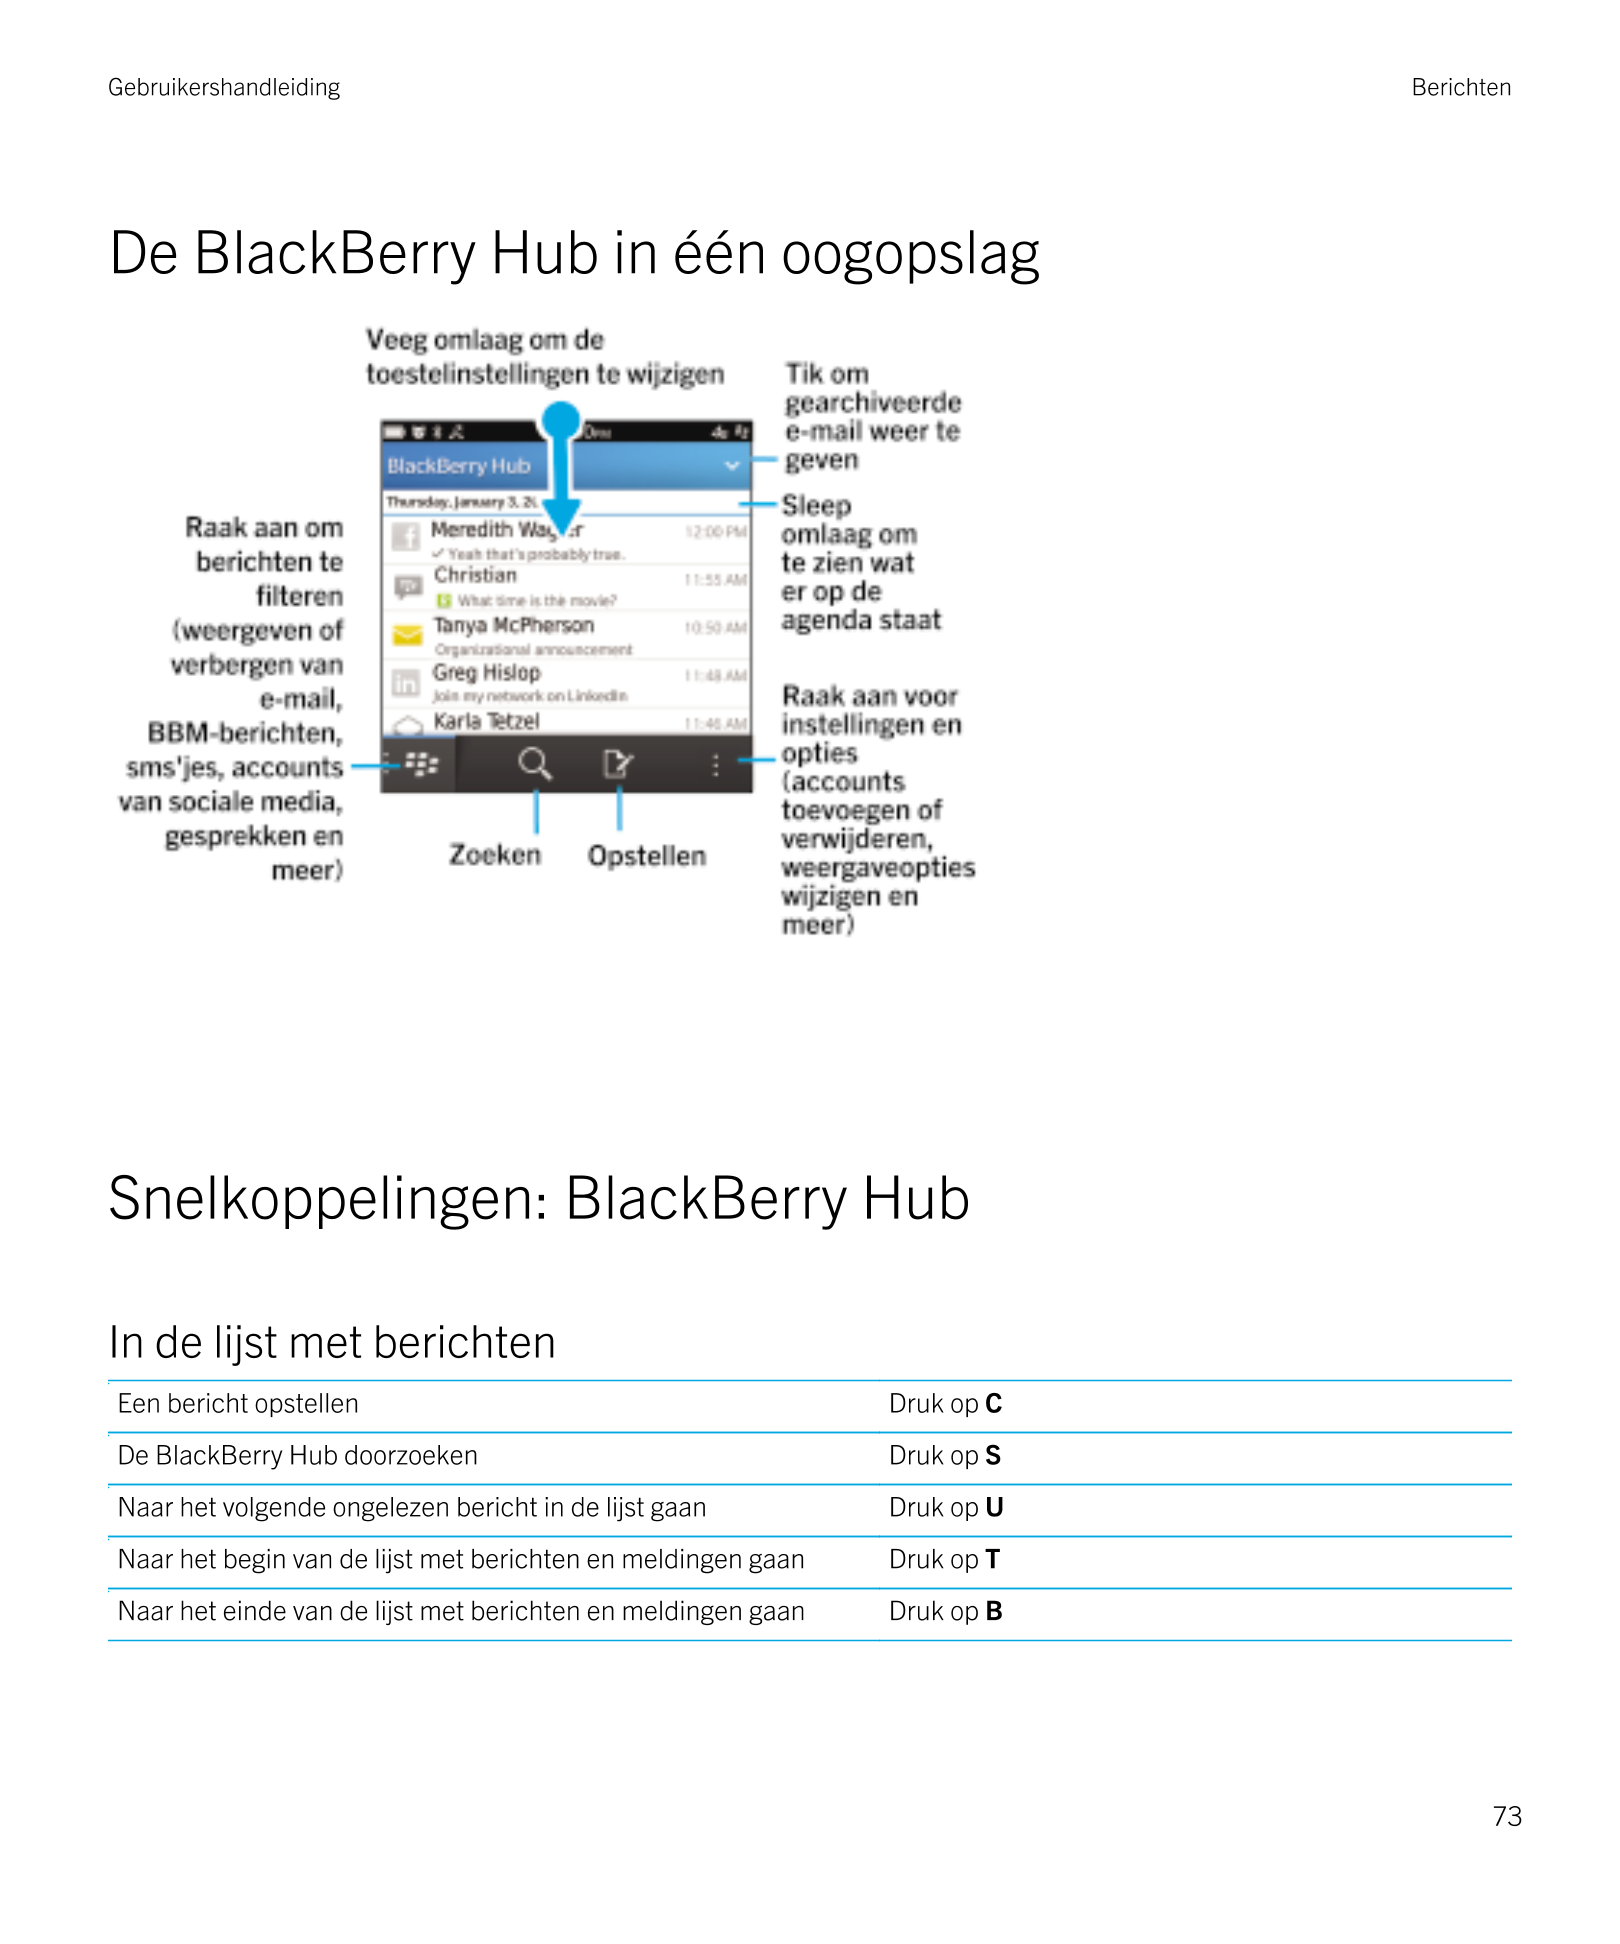 Gebruikershandleiding Berichten
De BlackBerry Hub in één oogopslag
Snelkoppelingen:  BlackBerry Hub
In de lijst met berichten
Ee